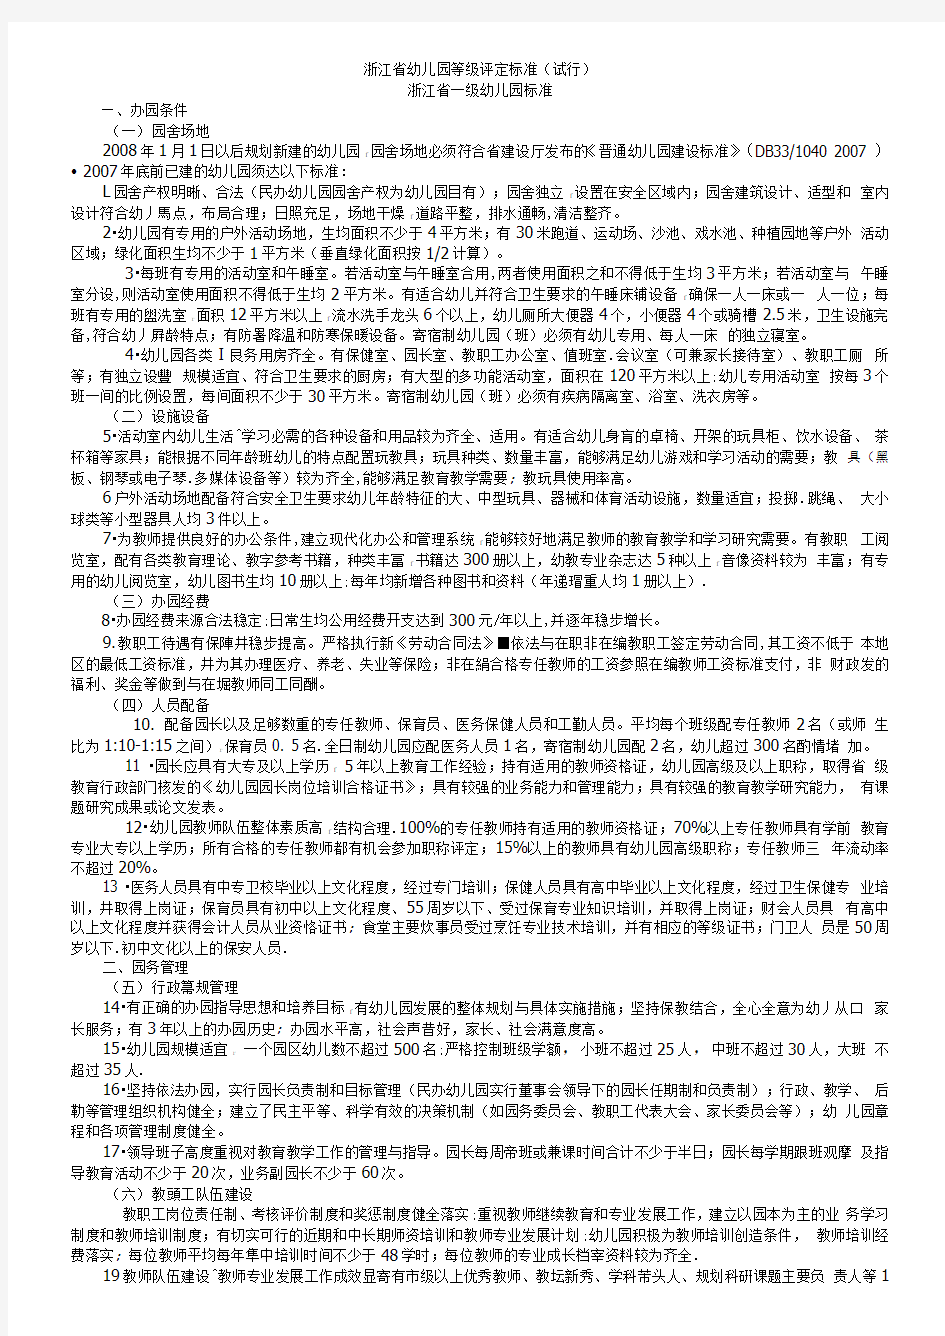 浙江省幼儿园等级评定标准(试行)(1)